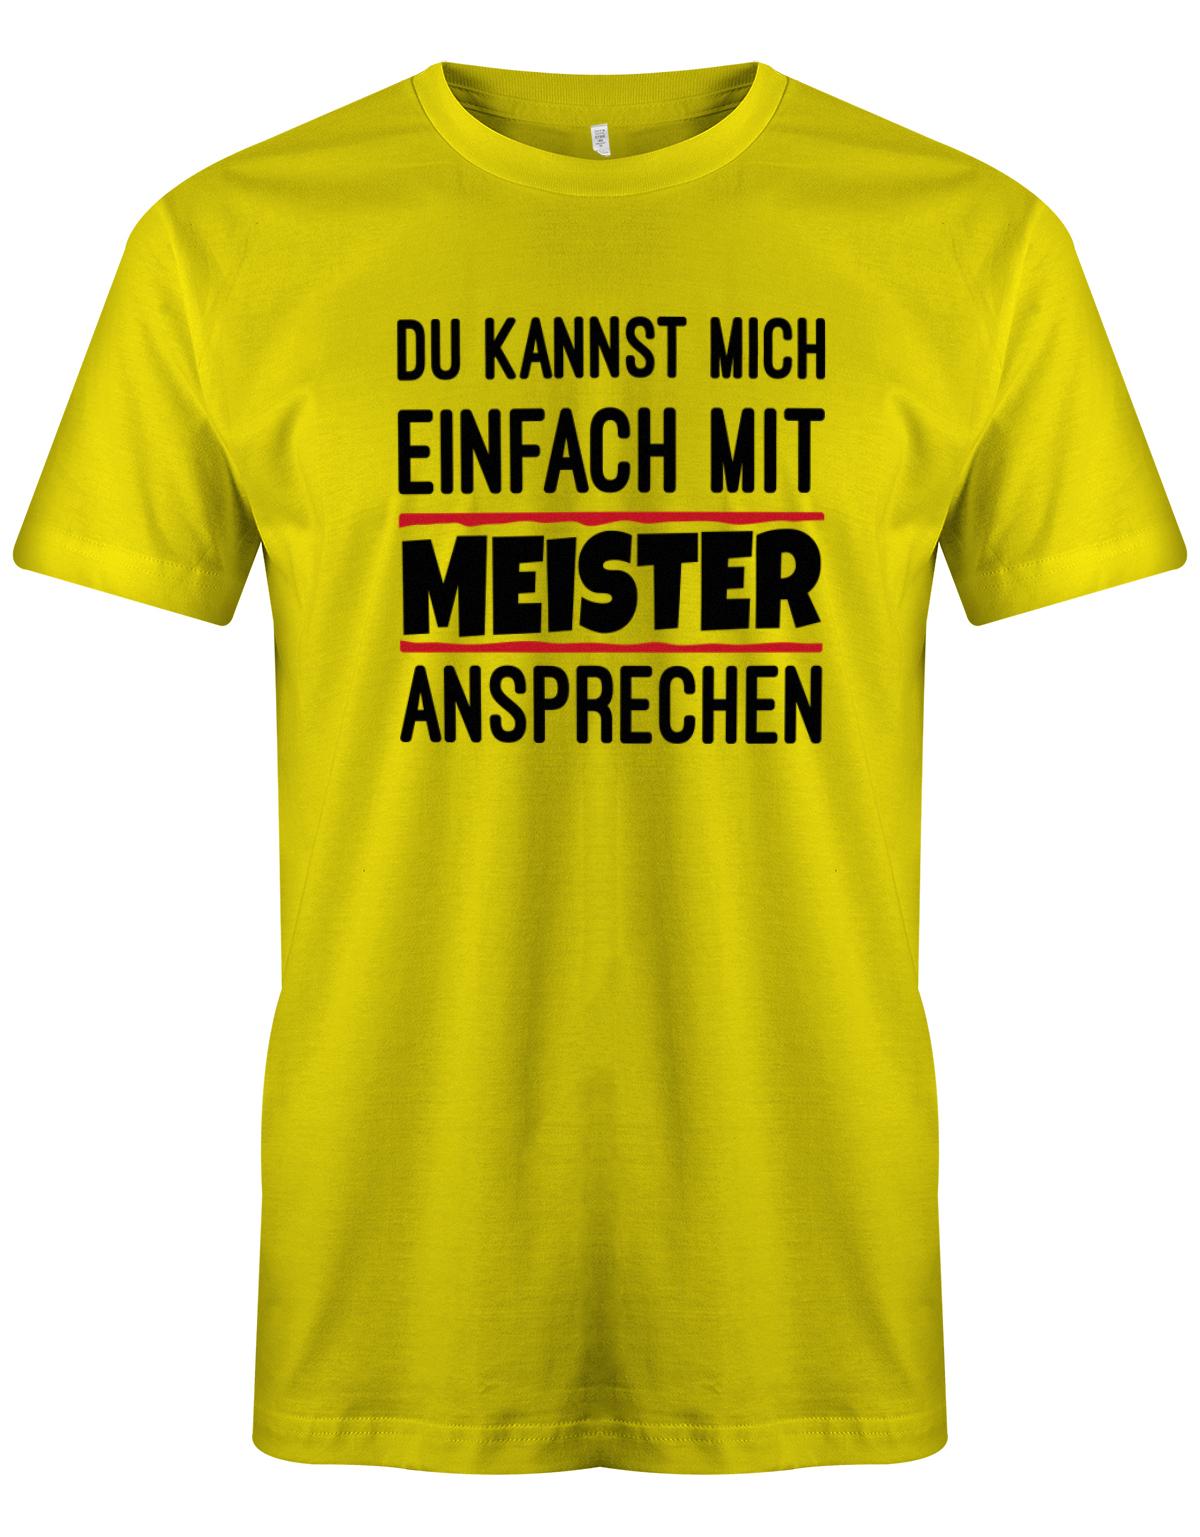 Du kannst mich einfach mit Meister ansprechen - Herren T-Shirt myShirtStore Gelb